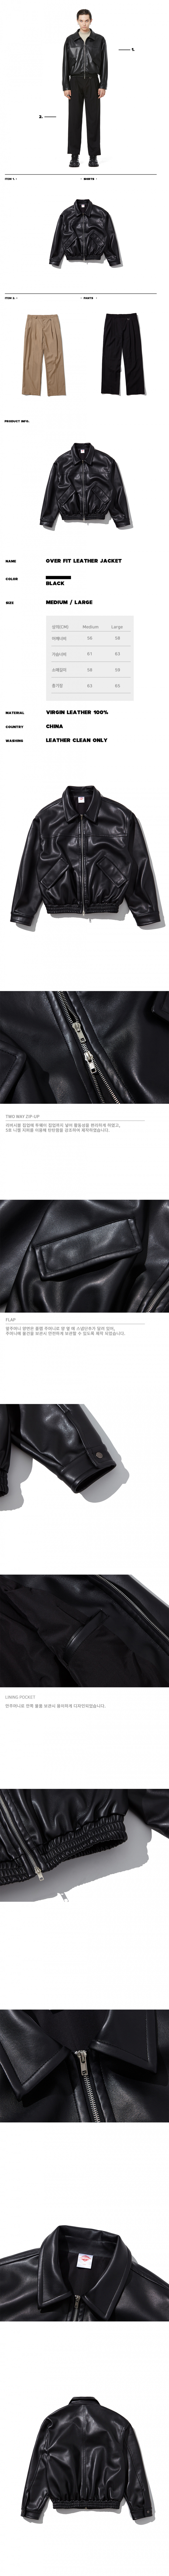 파나컬트(FANA CULT) 오버핏 레더 재킷